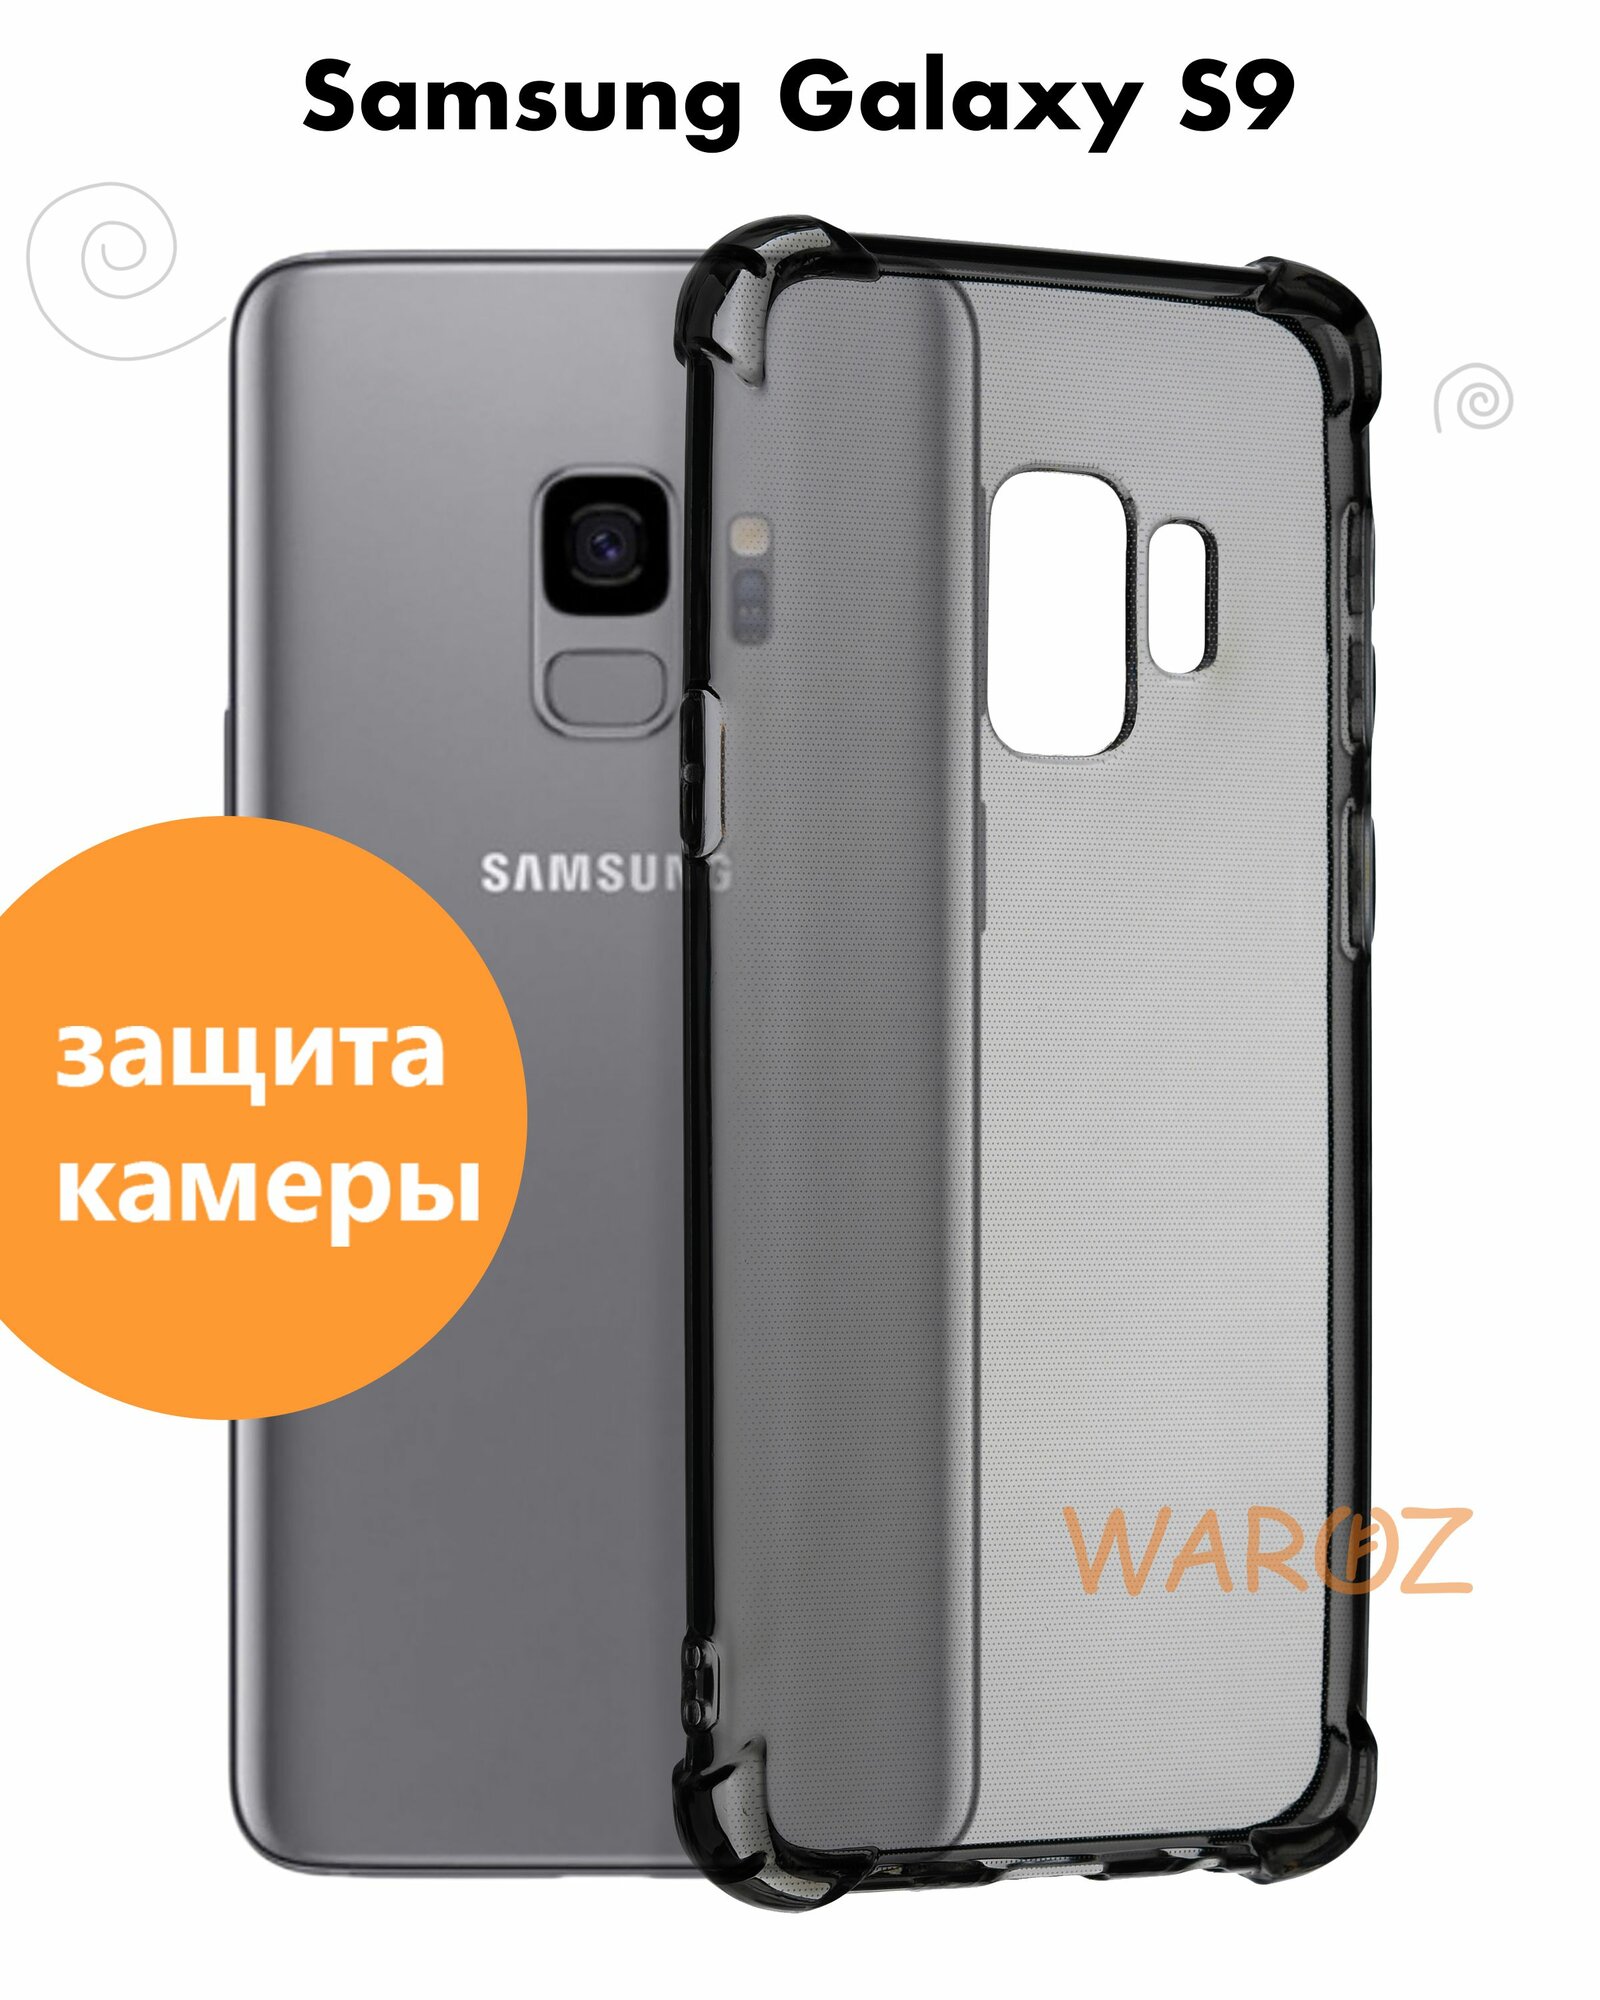 Чехол для смартфона Samsung Galaxy S9 силиконовый противоударный с защитой камеры, бампер с усиленными углами для телефона Самсунг Галакси С9 прозрачный серый